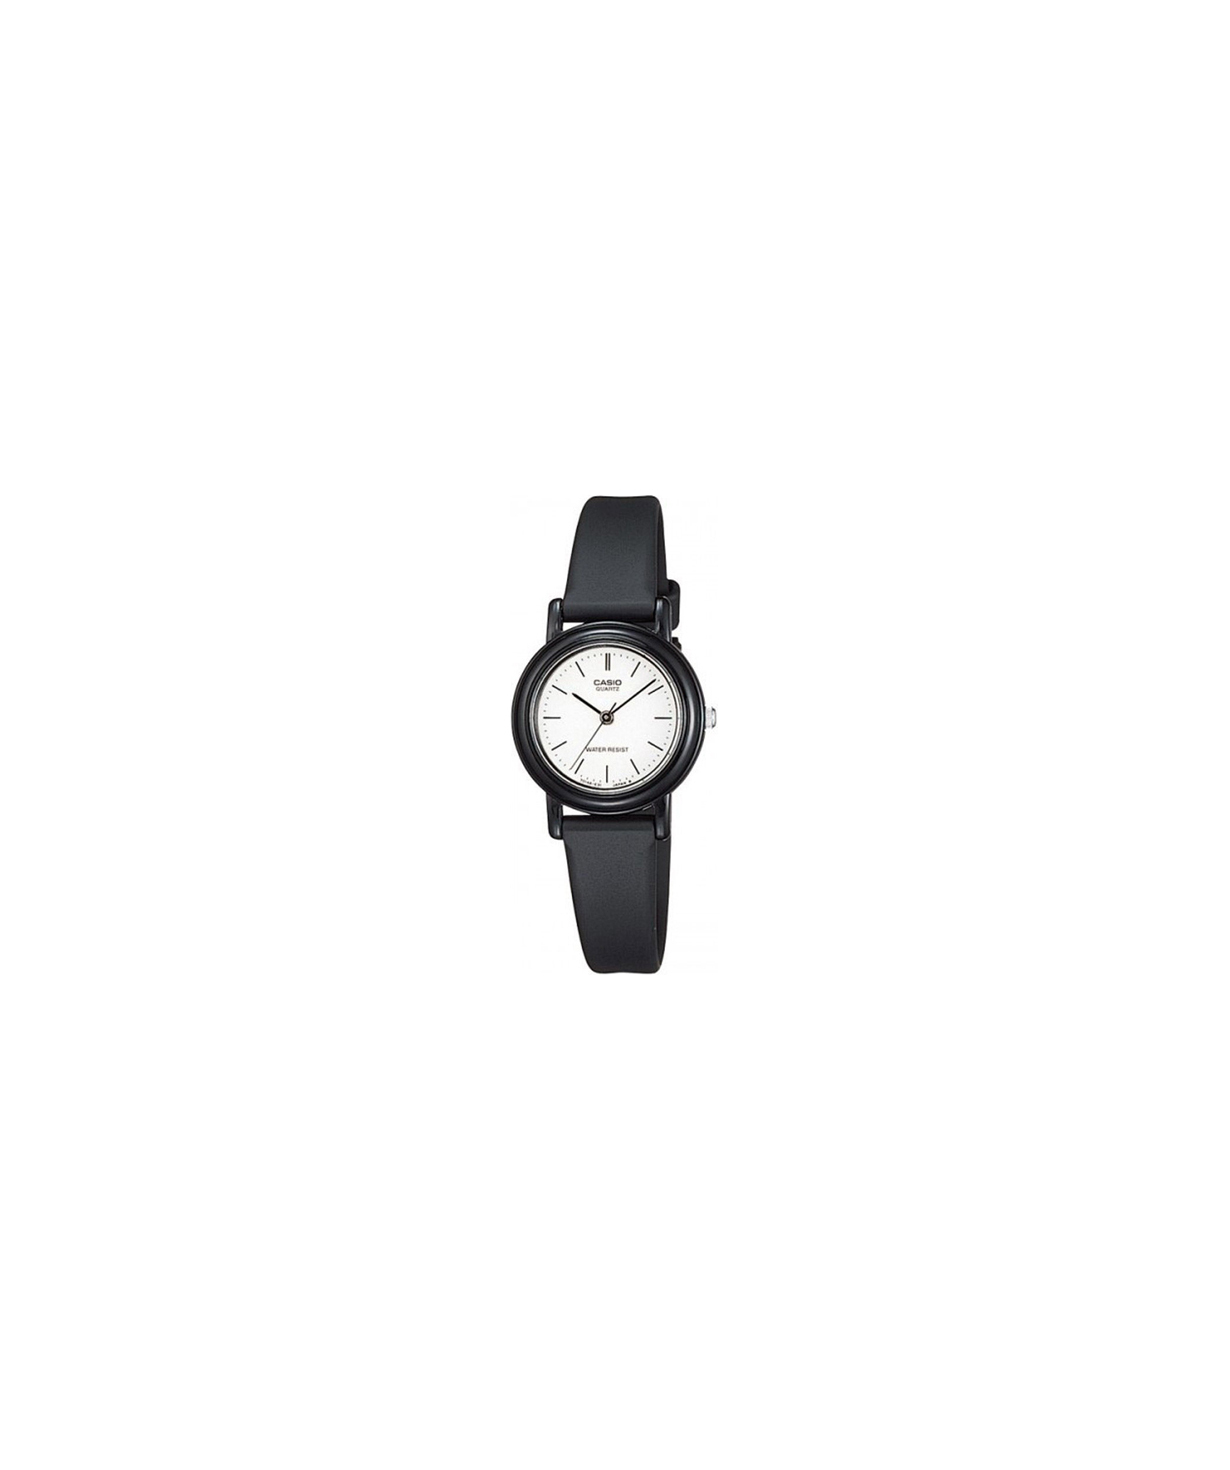 Ժամացույց  «Casio» ձեռքի  LQ-139BMV-7ELDF